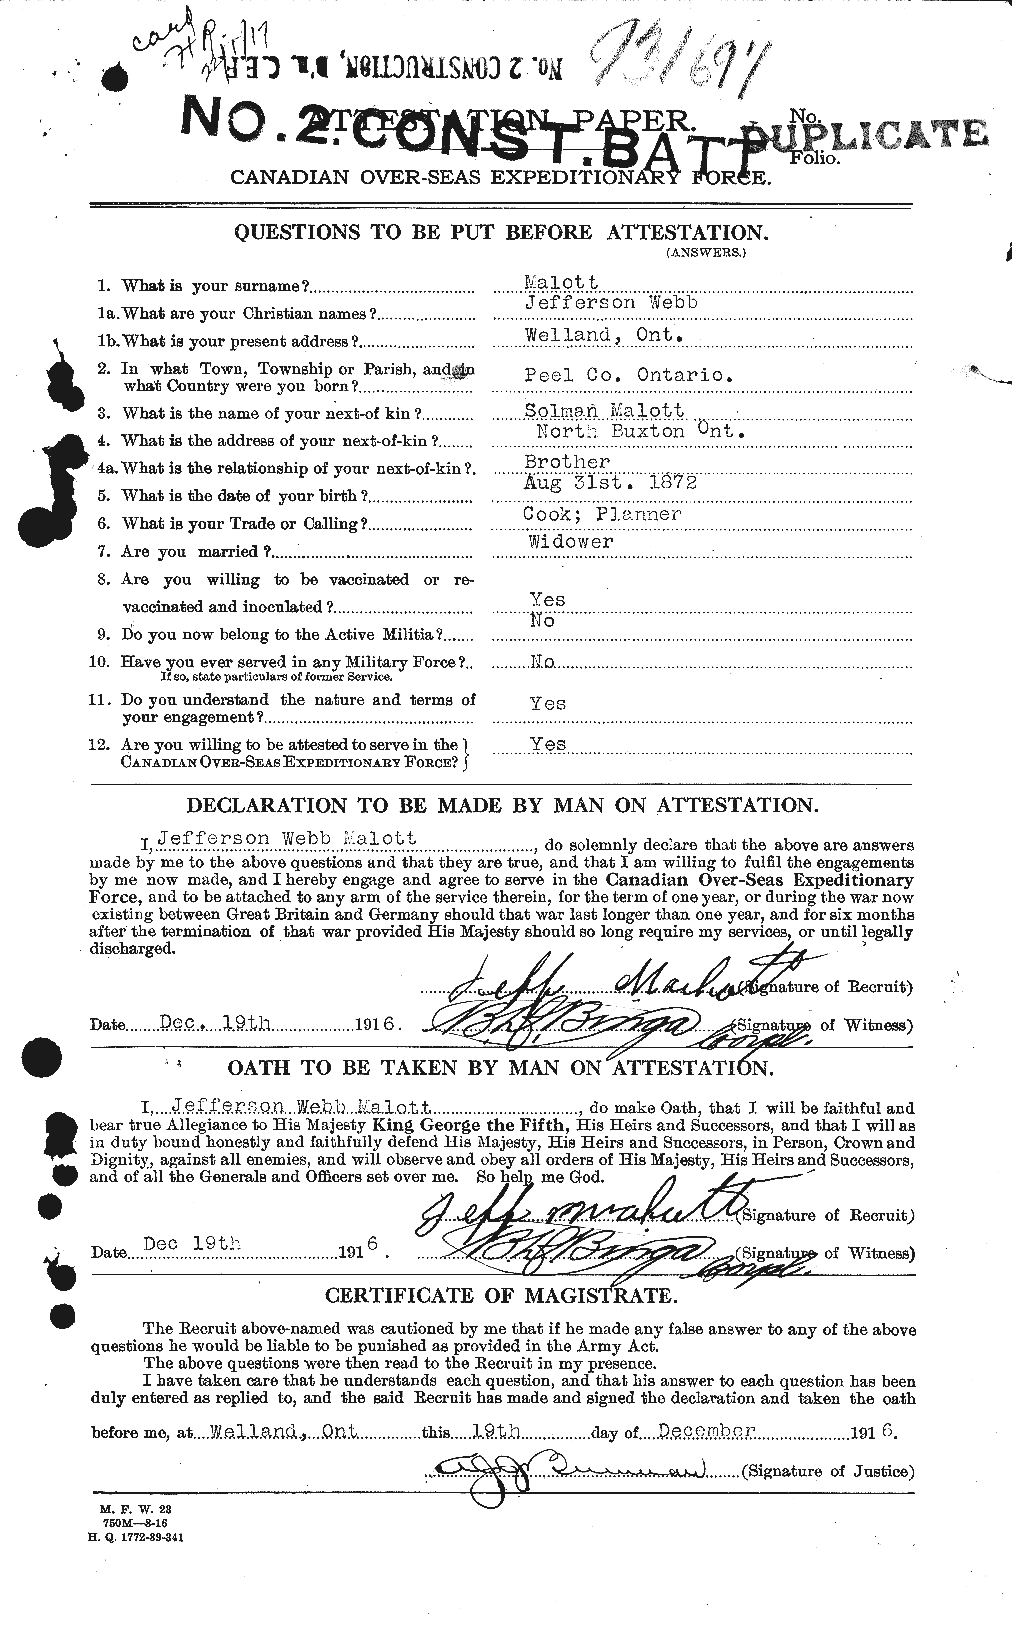 Dossiers du Personnel de la Première Guerre mondiale - CEC 479059a